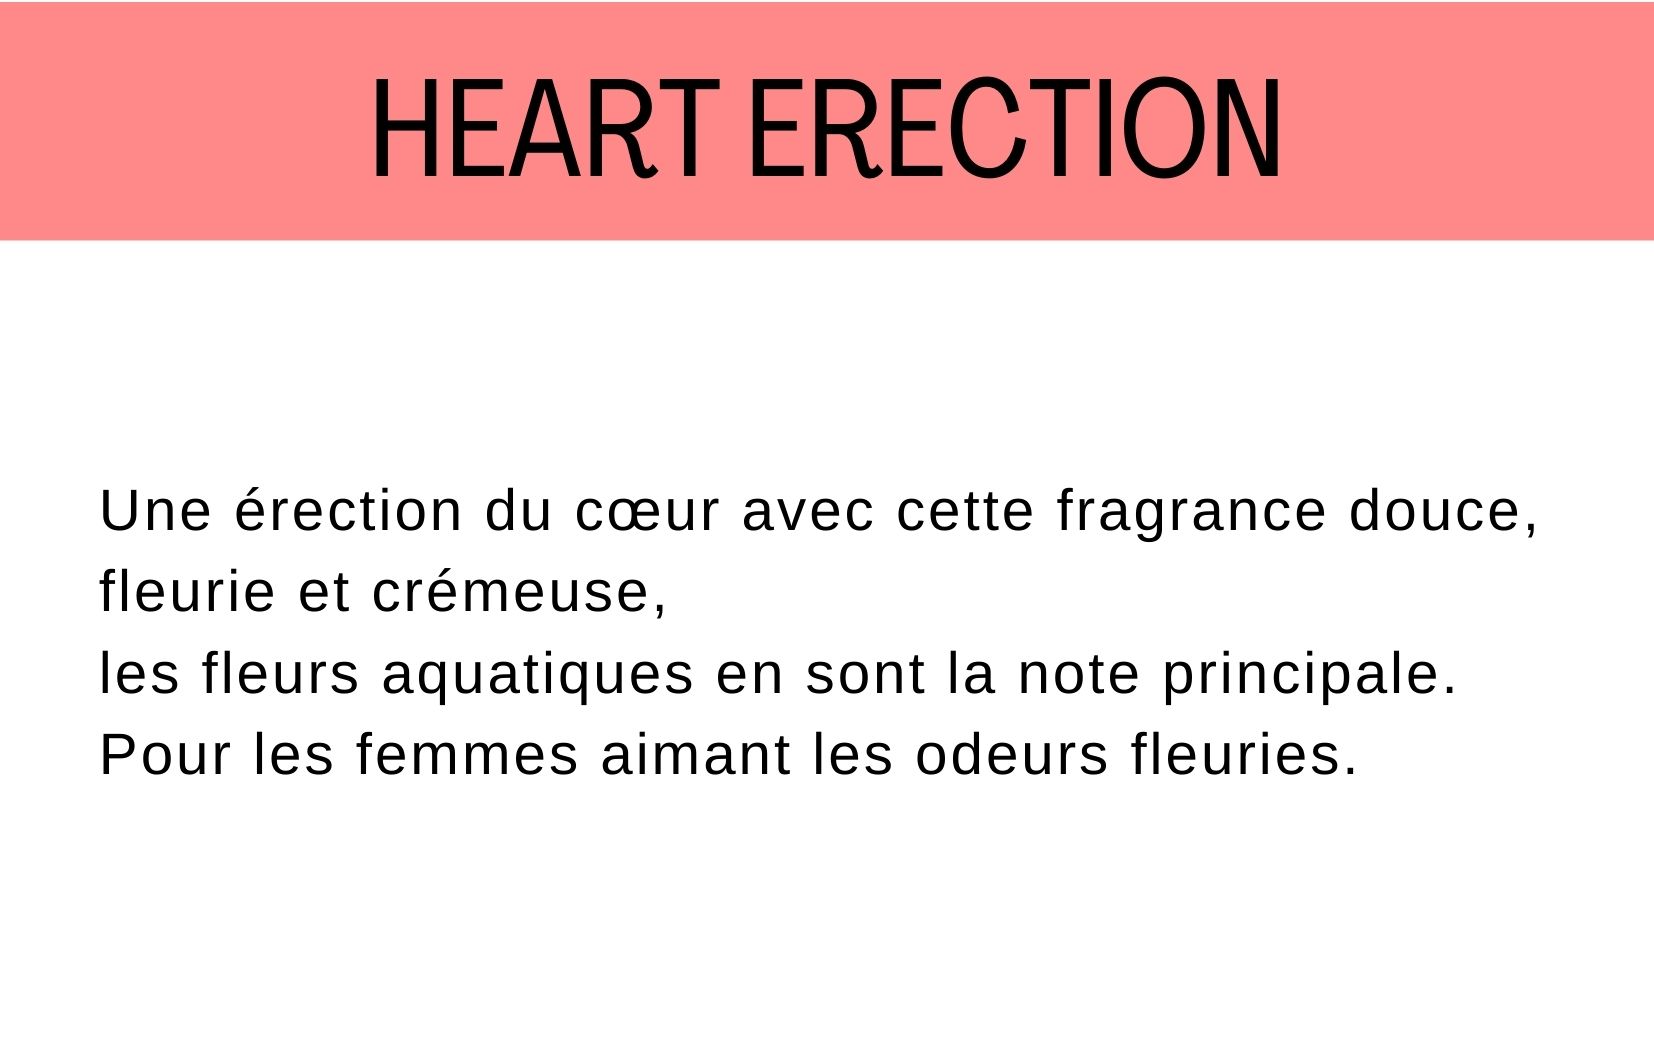 Fragrance heart erection description